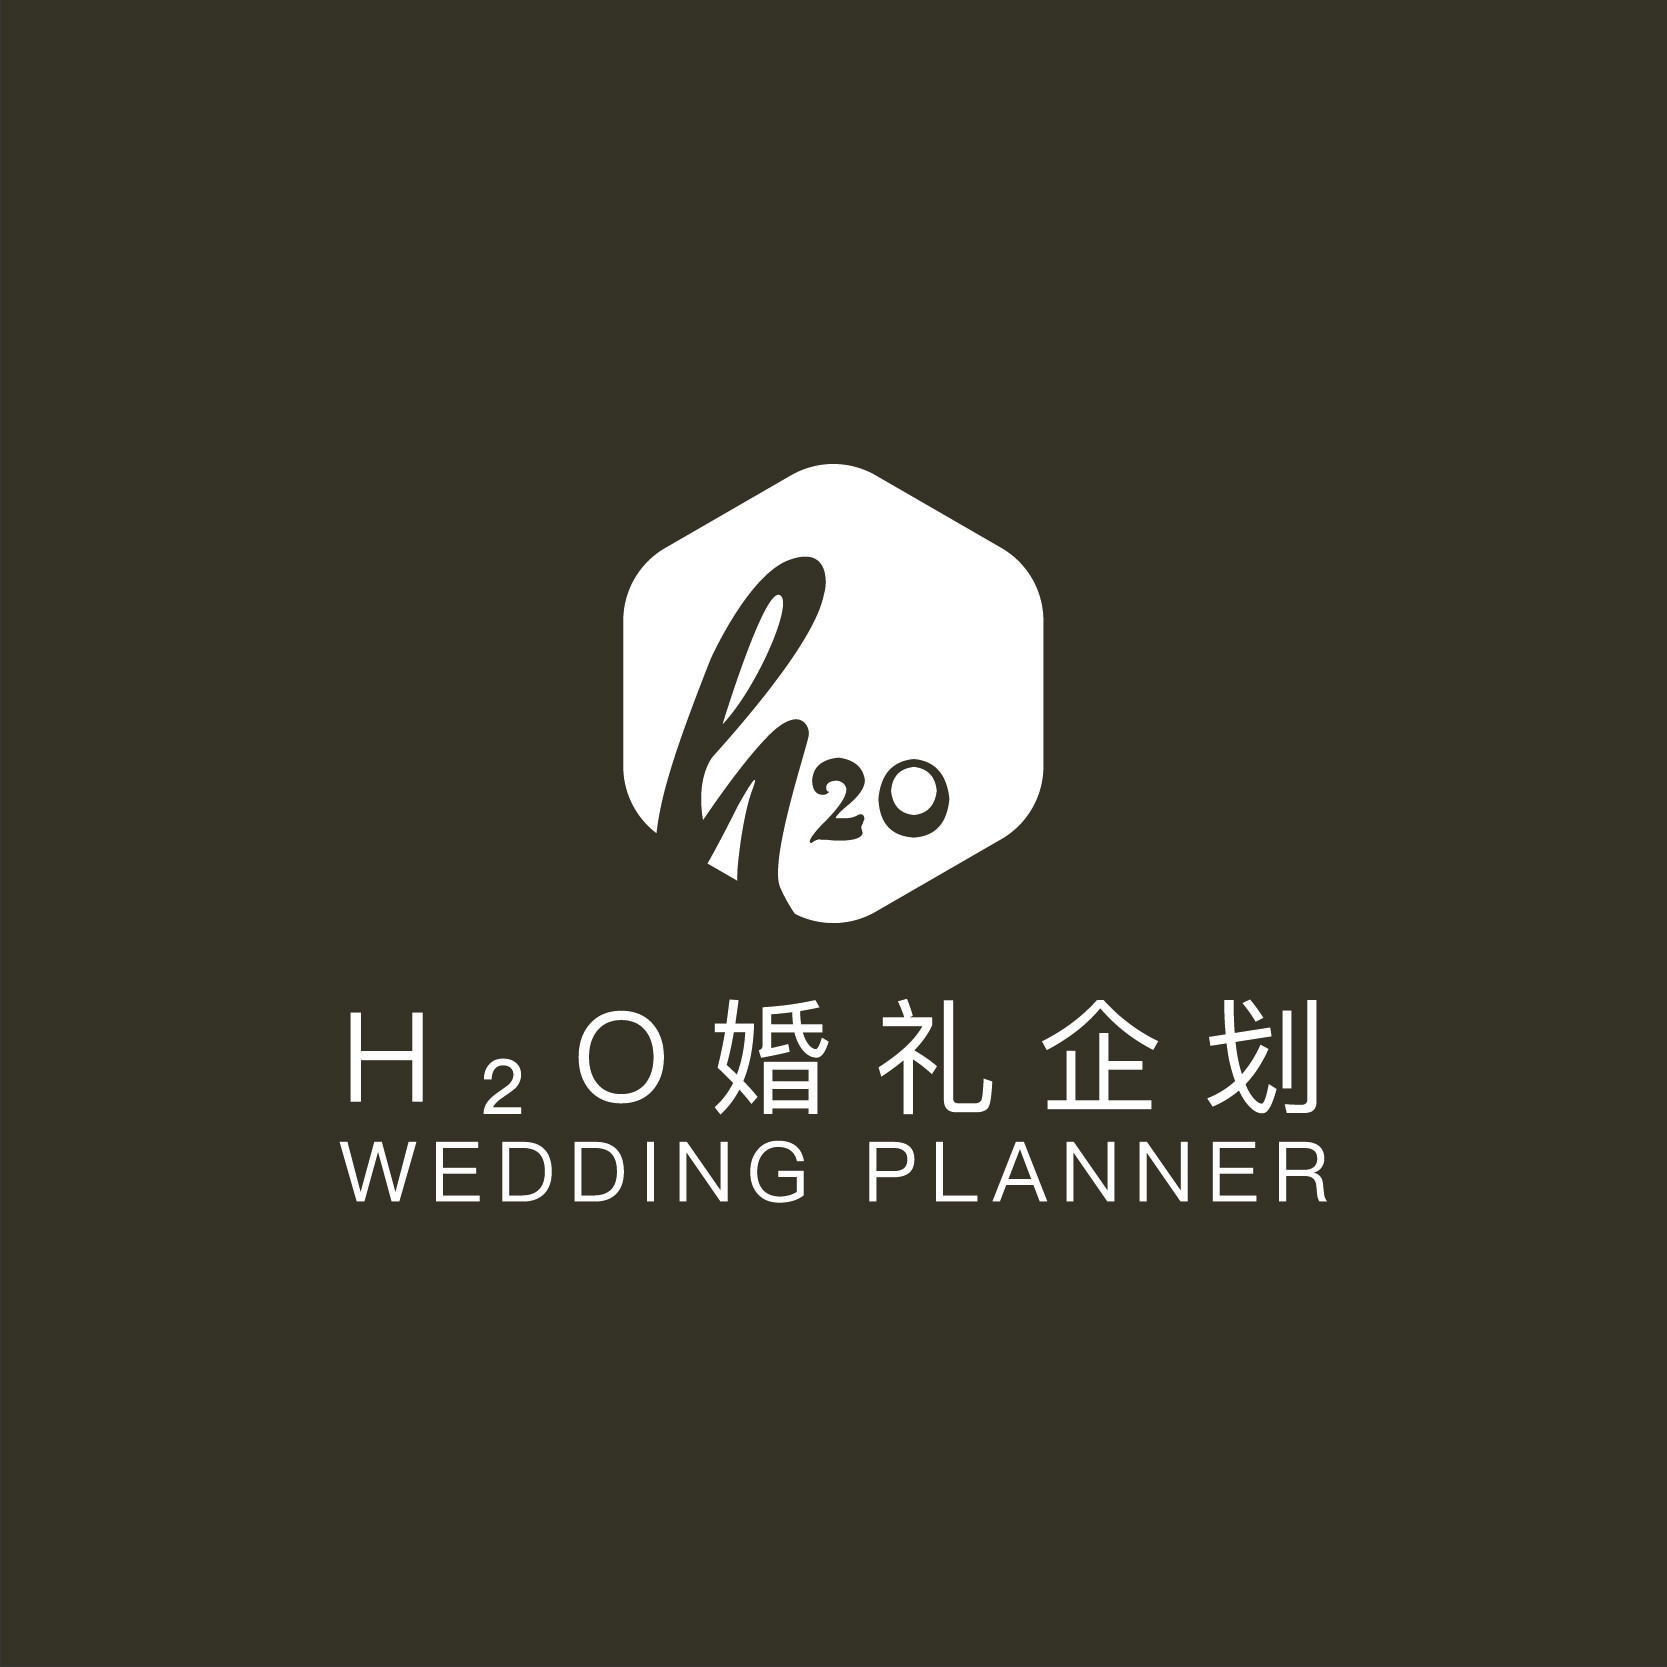 H2O婚礼企划